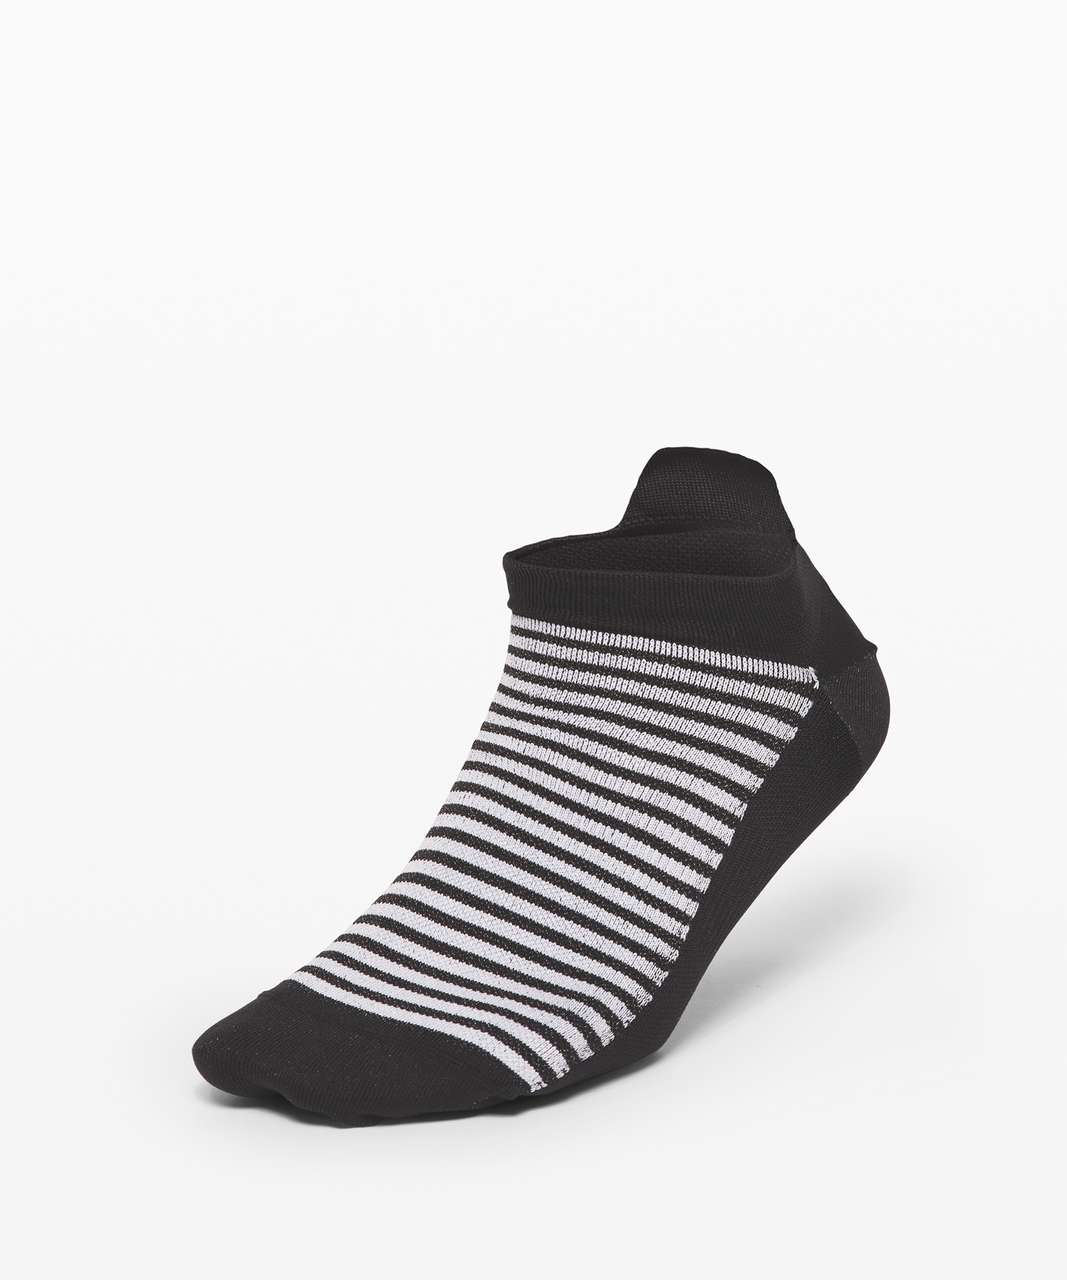 Lululemon Light Speed Sock *Silver - Black / White